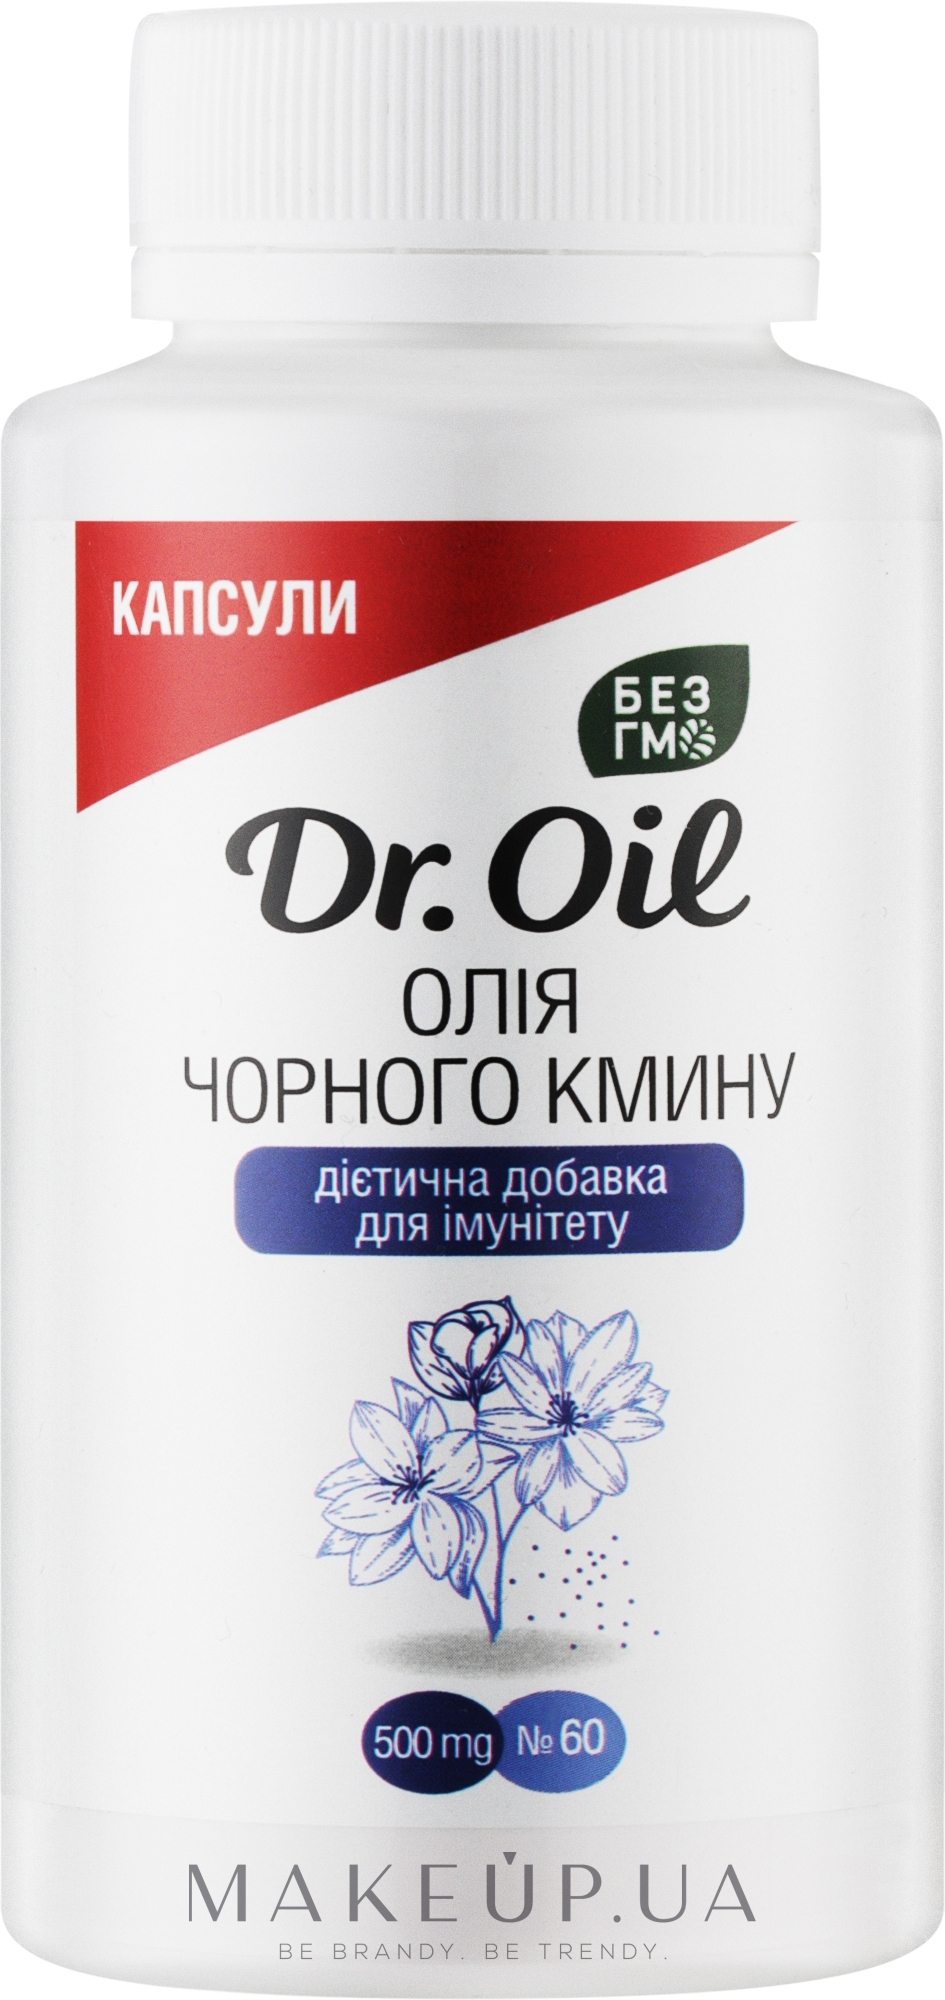 Дієтична добавка "Олія Чорного кміну" - Dr.Oil — фото 60шт